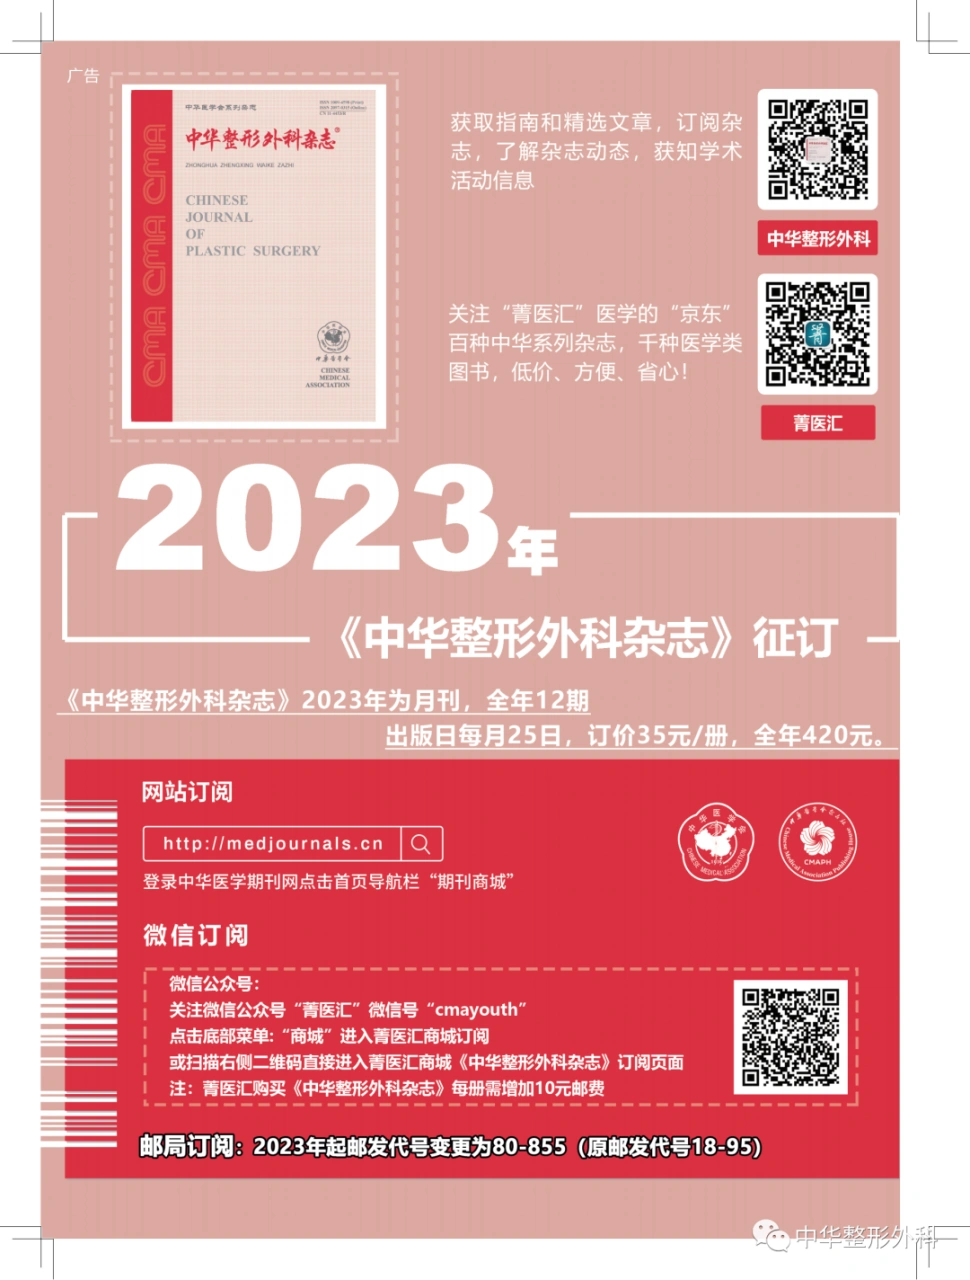 血管瘤和脉管畸形的诊疗进展(2020—2021)